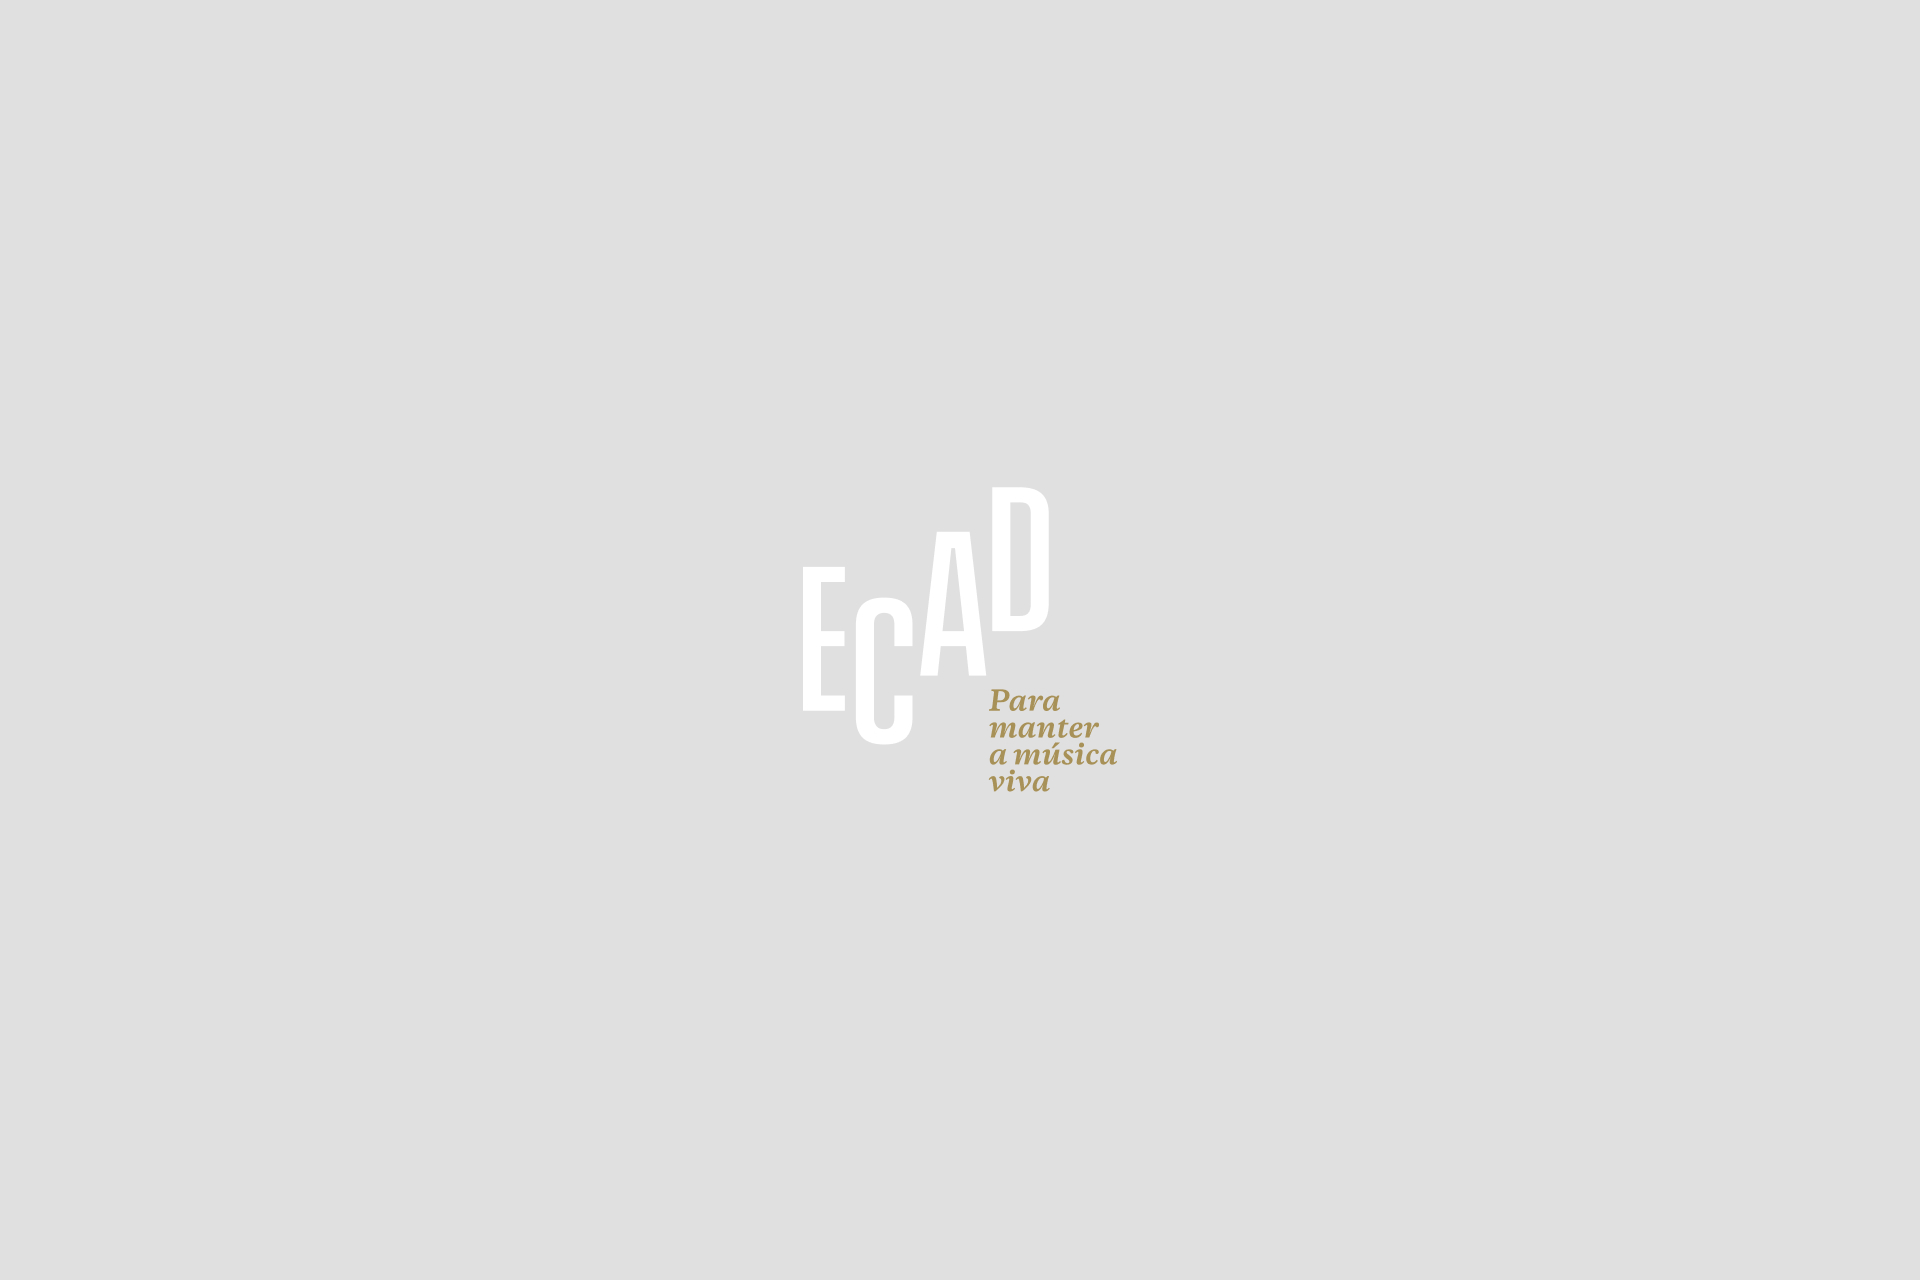 Ecad lança campanha para conscientizar usuários de música nas festas juninas